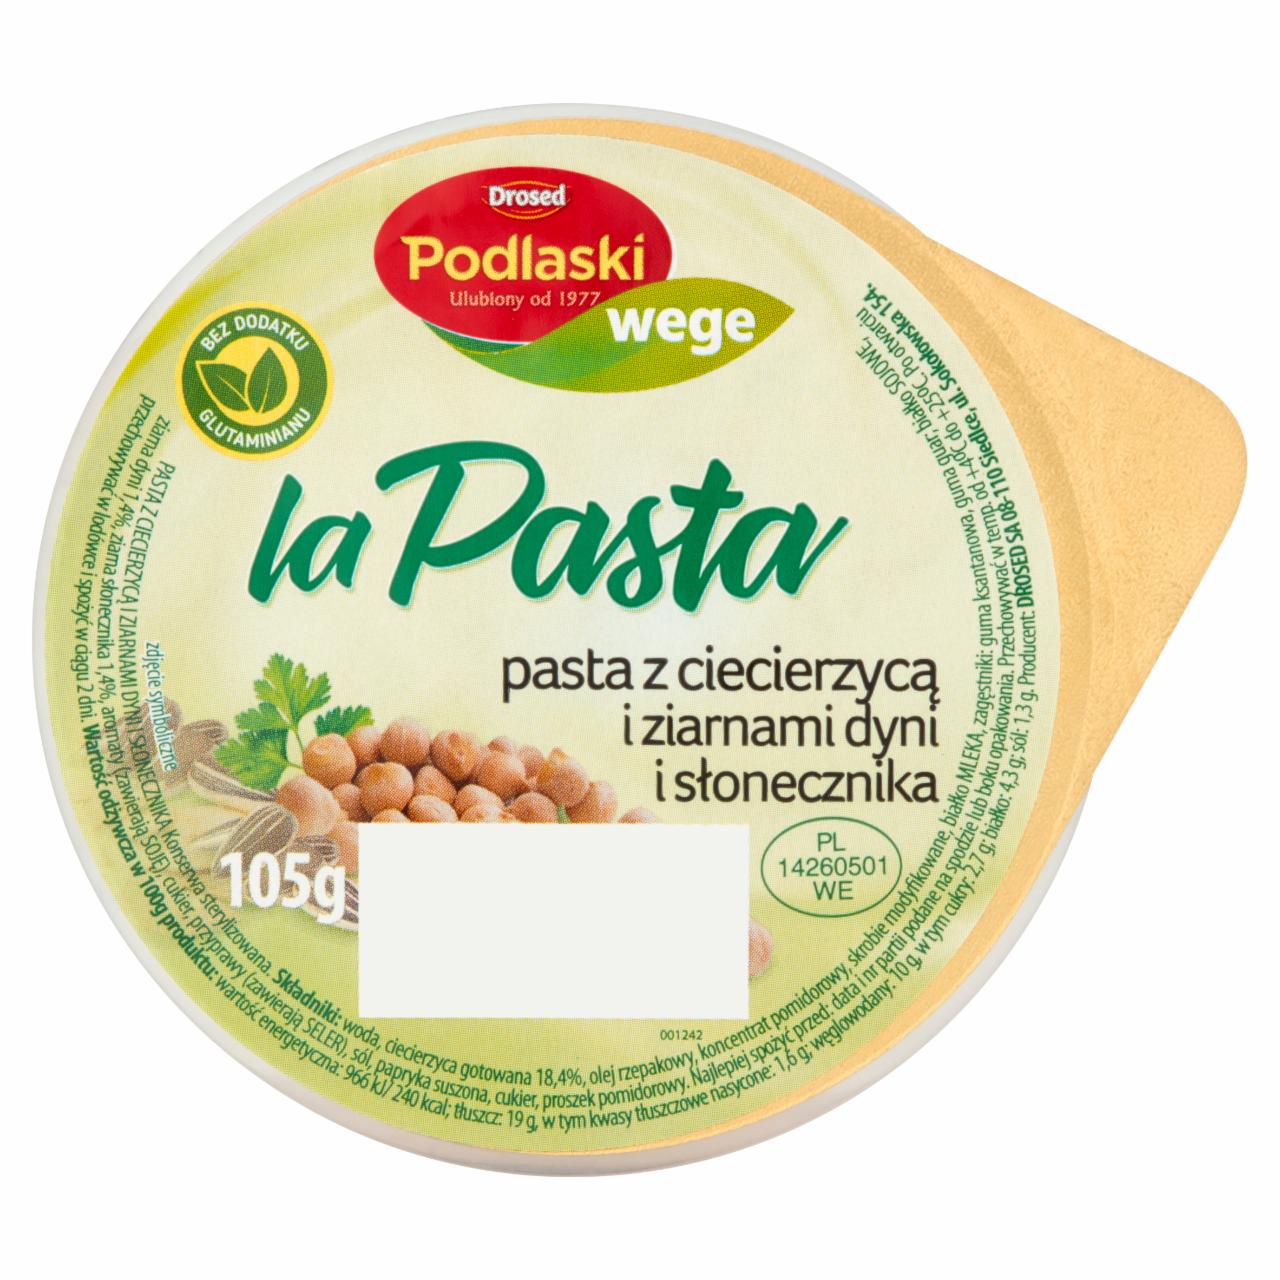 Zdjęcia - Drosed Podlaski wege la Pasta Pasta z ciecierzycą i ziarnami dyni i słonecznika 105 g